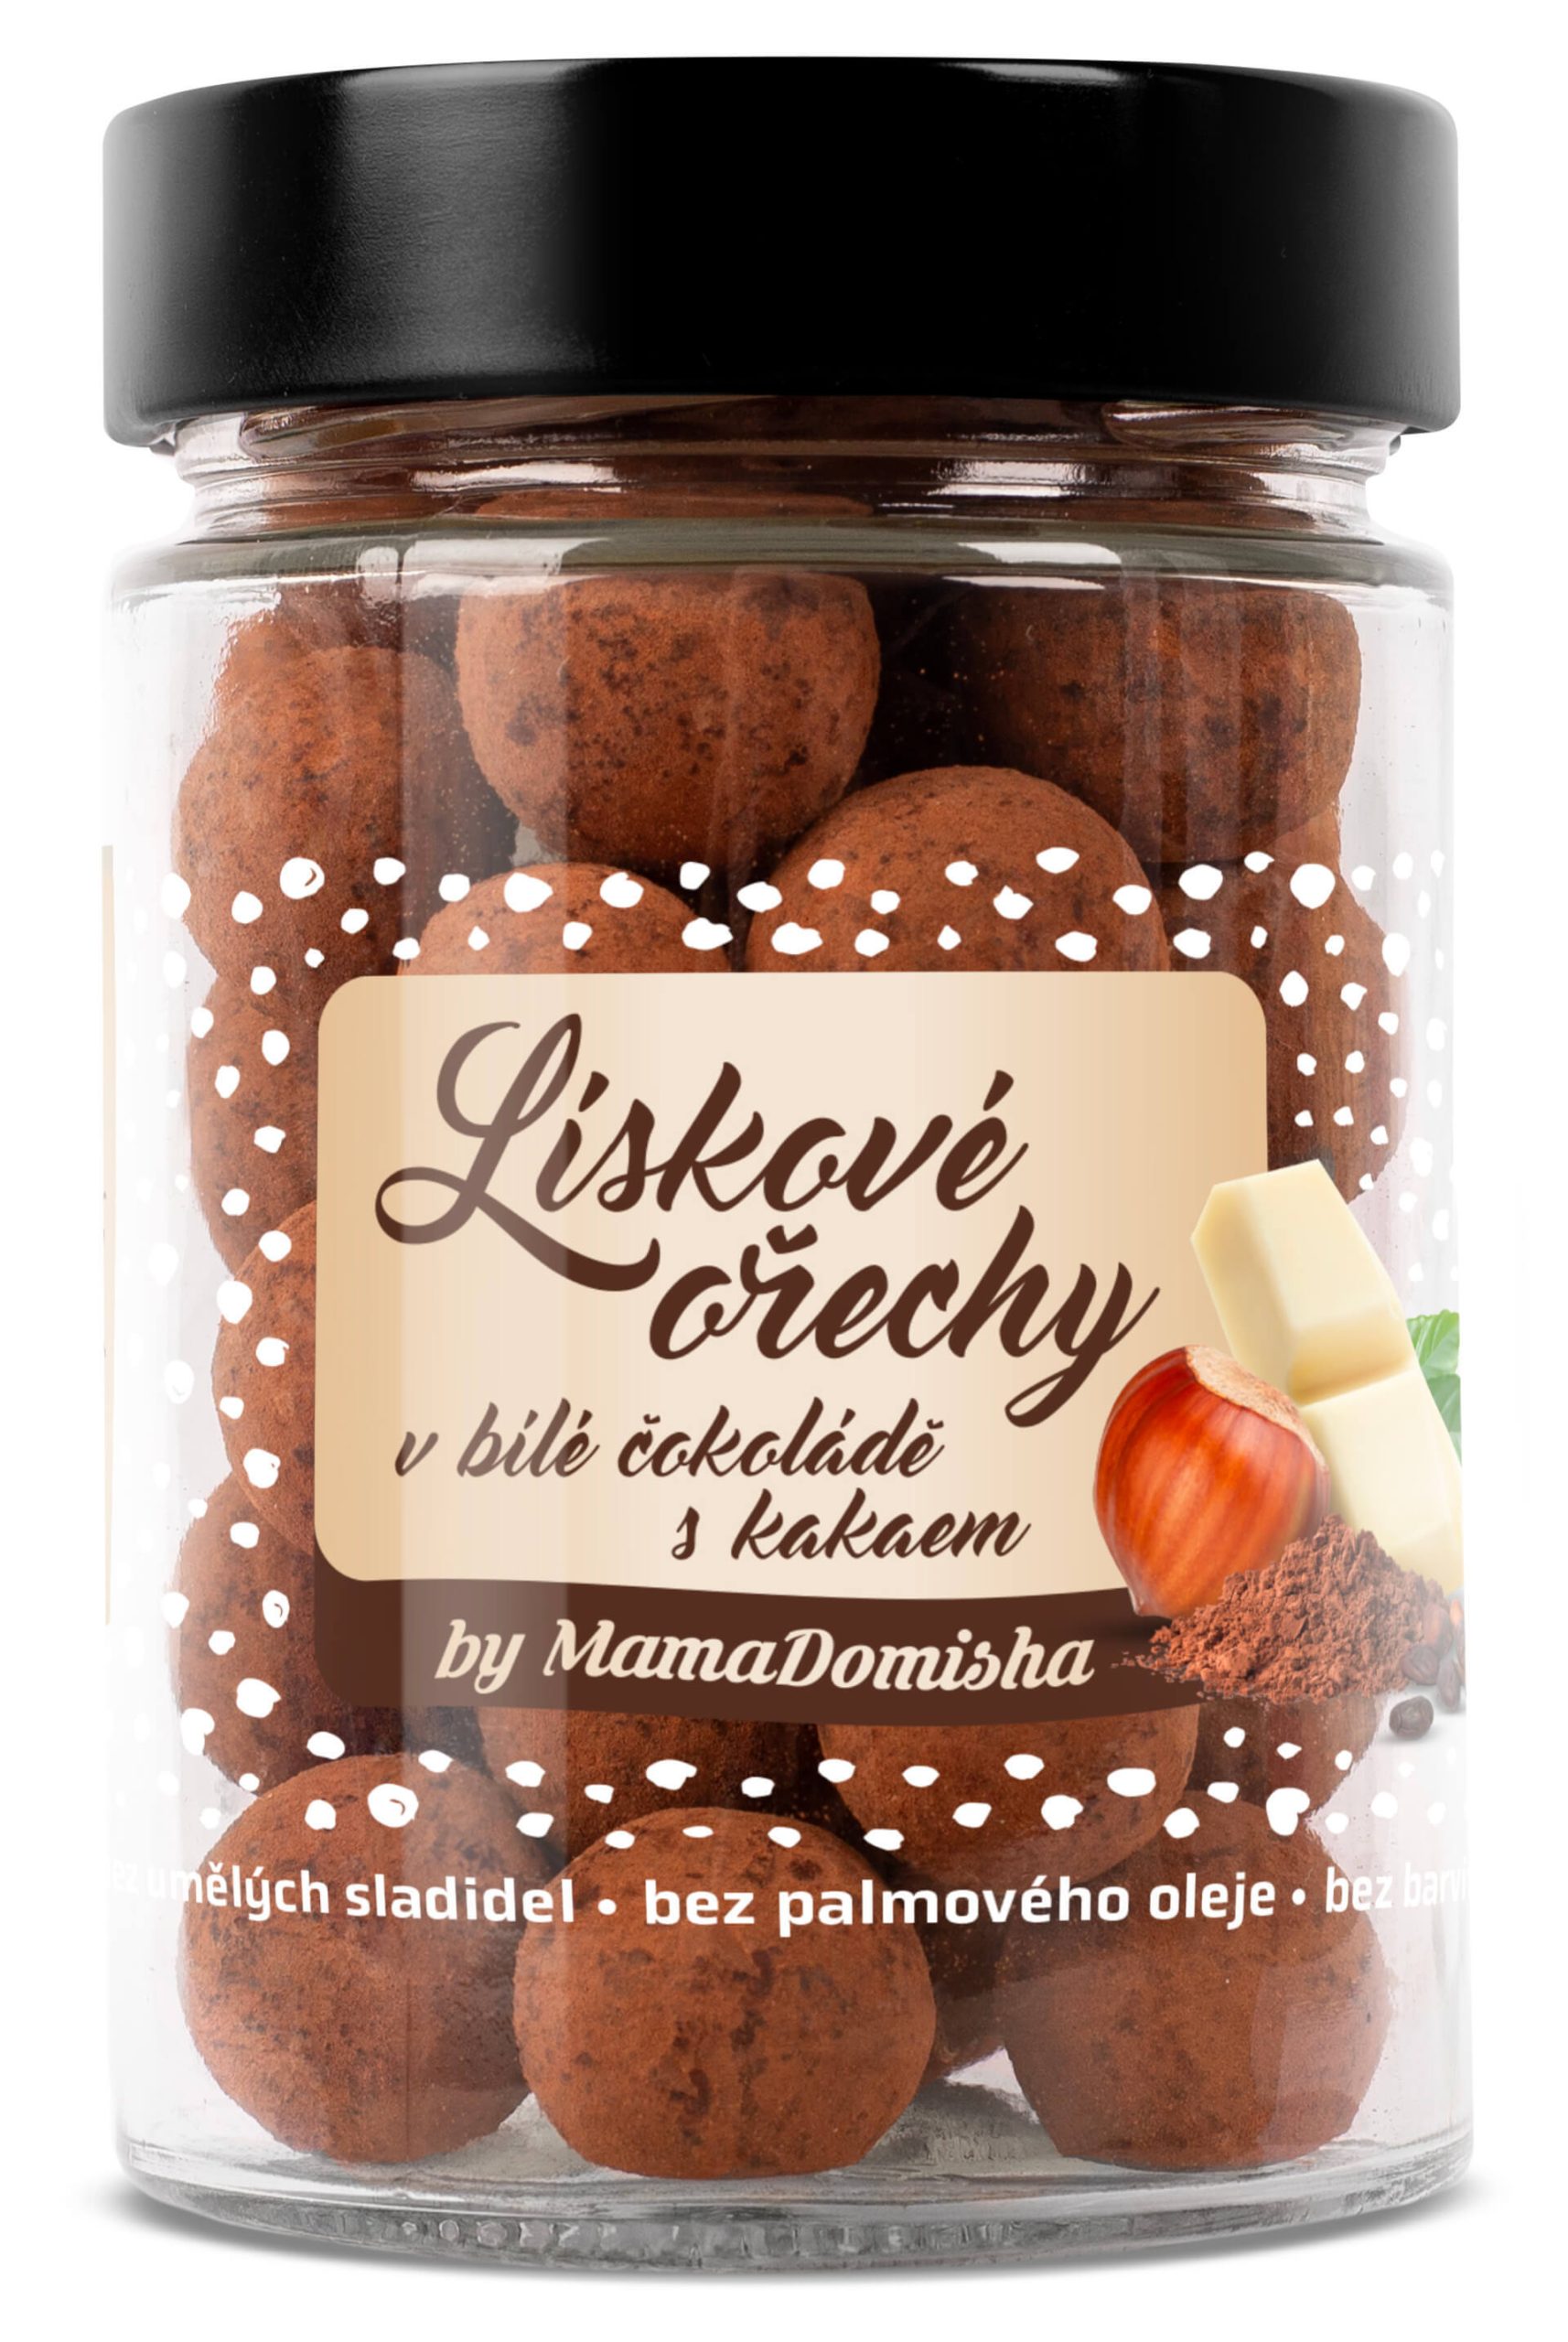 GRIZLY Lískové ořechy v bílé čokoládě a kakau by MamaDomisha 120 g expirace